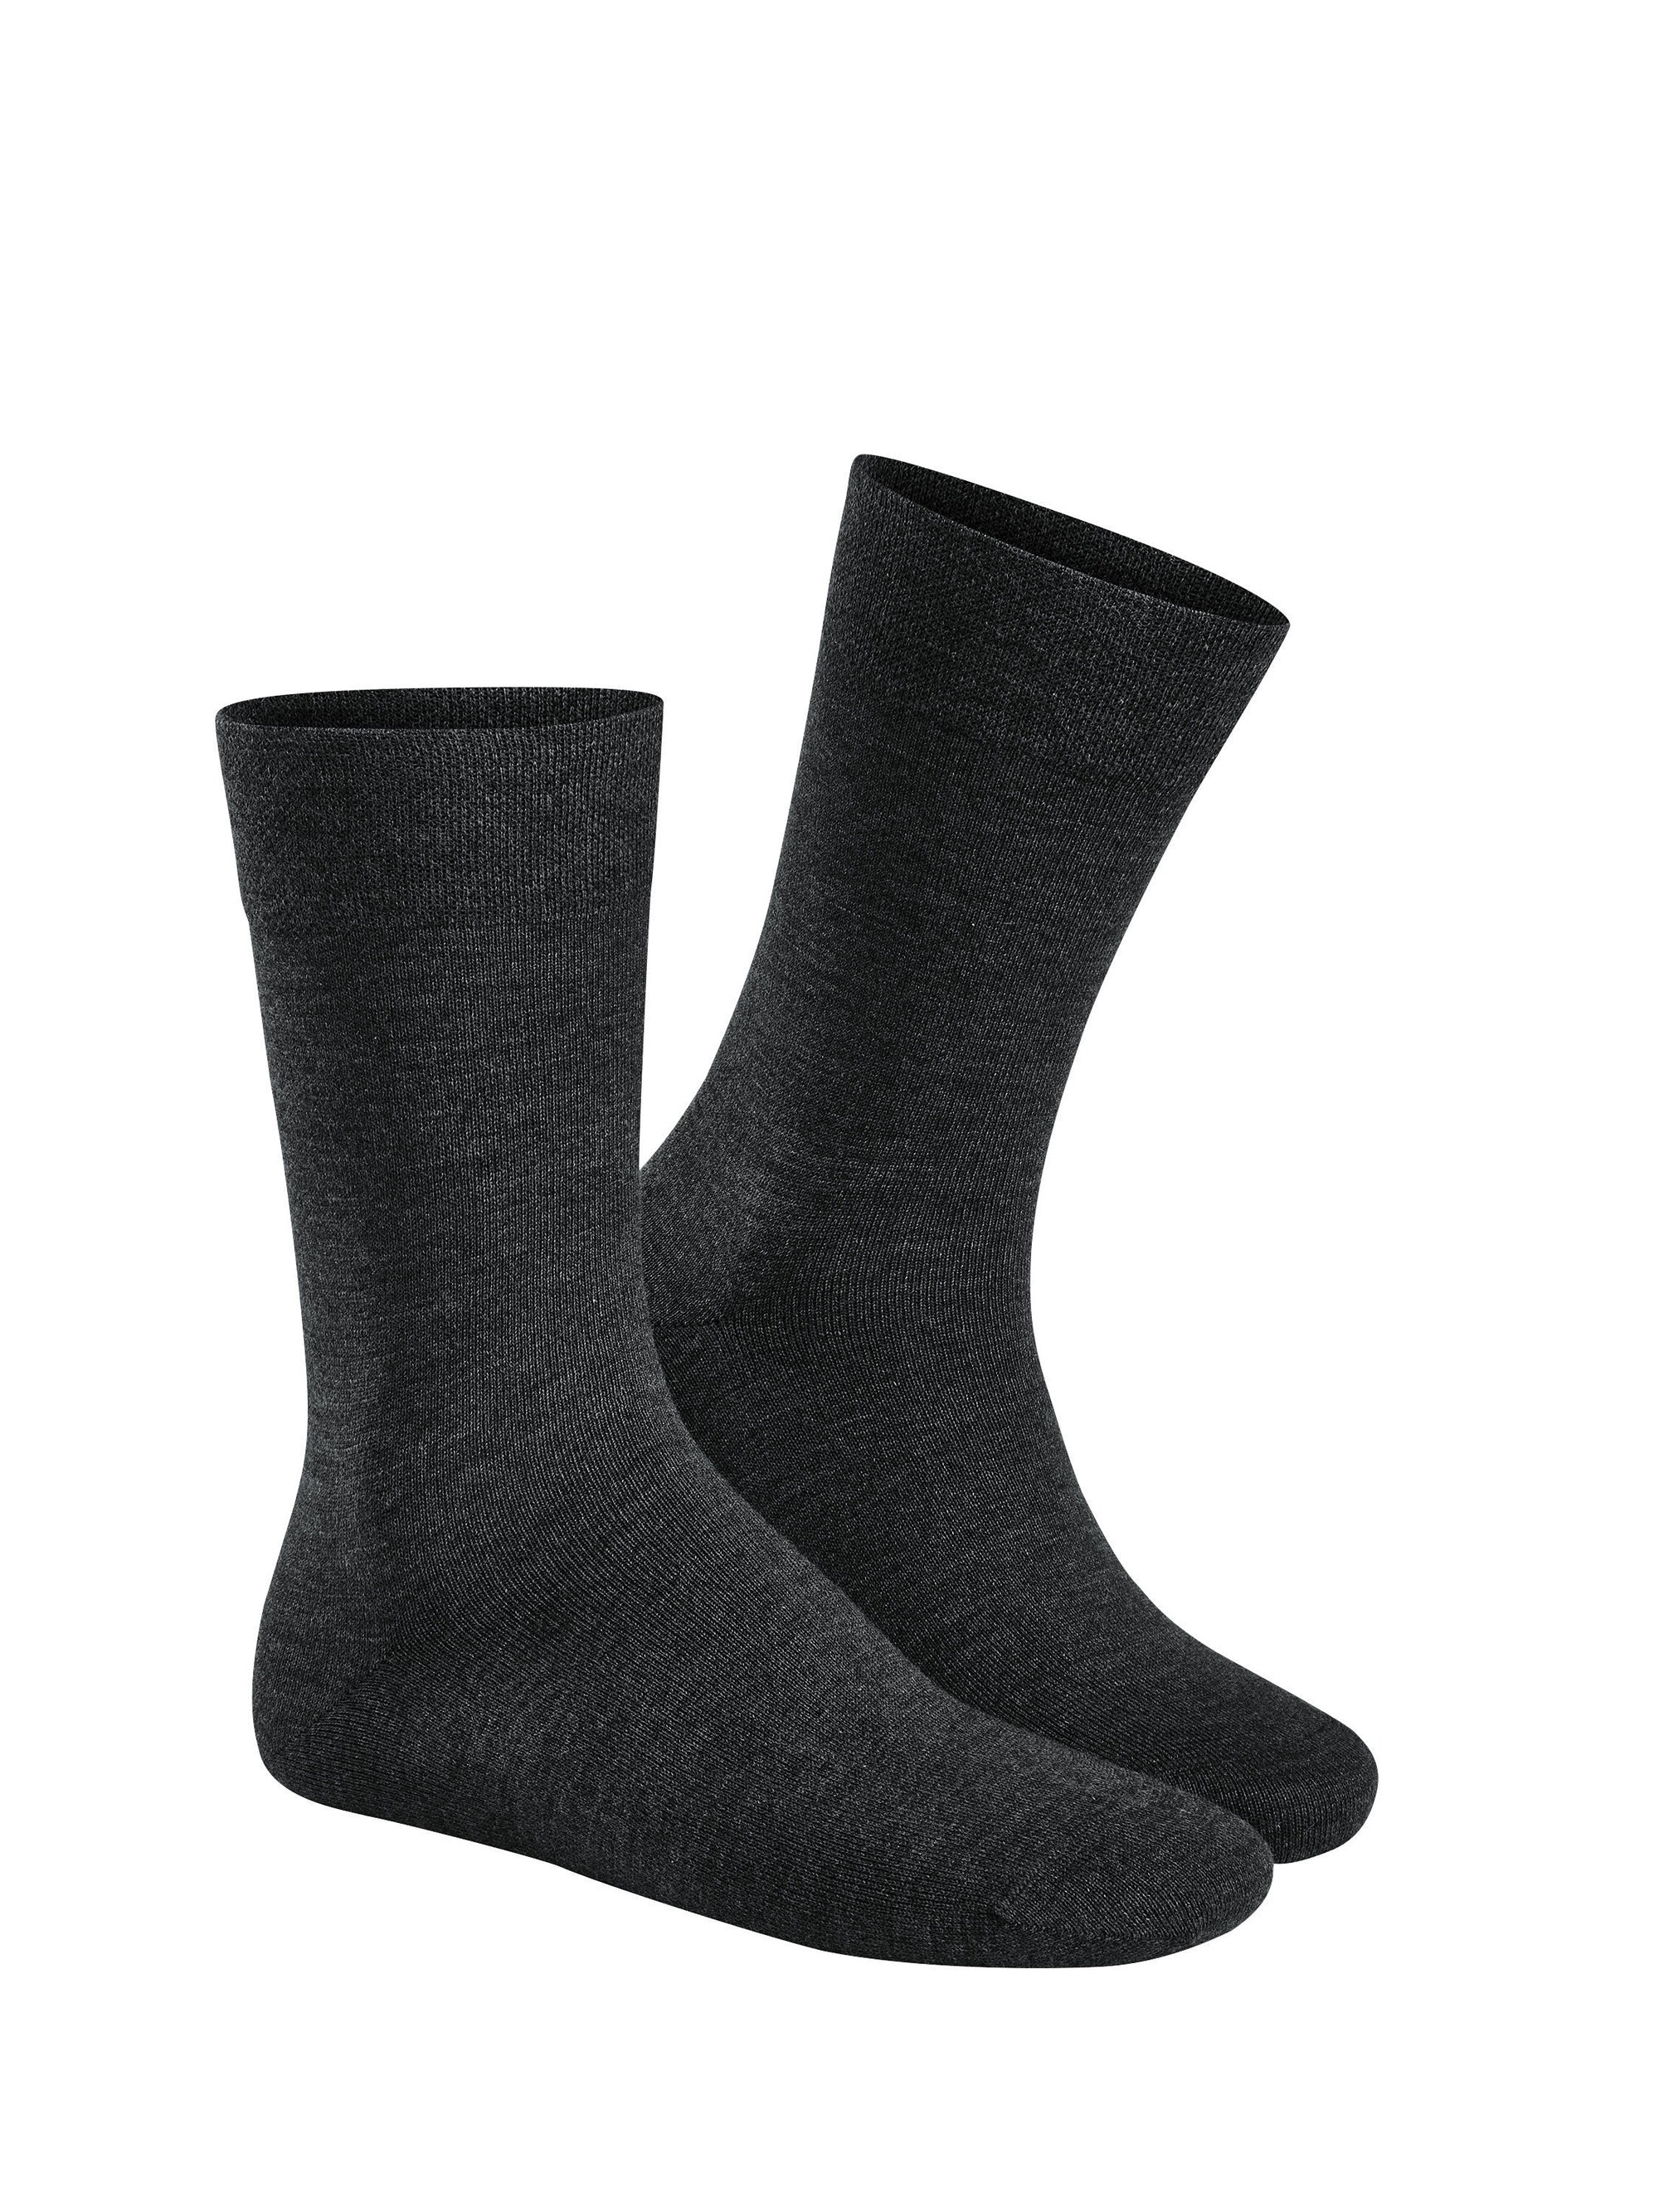 Woll-Socke "Relax Woolmix" ohne Gummi-Druck mit Baumwolle